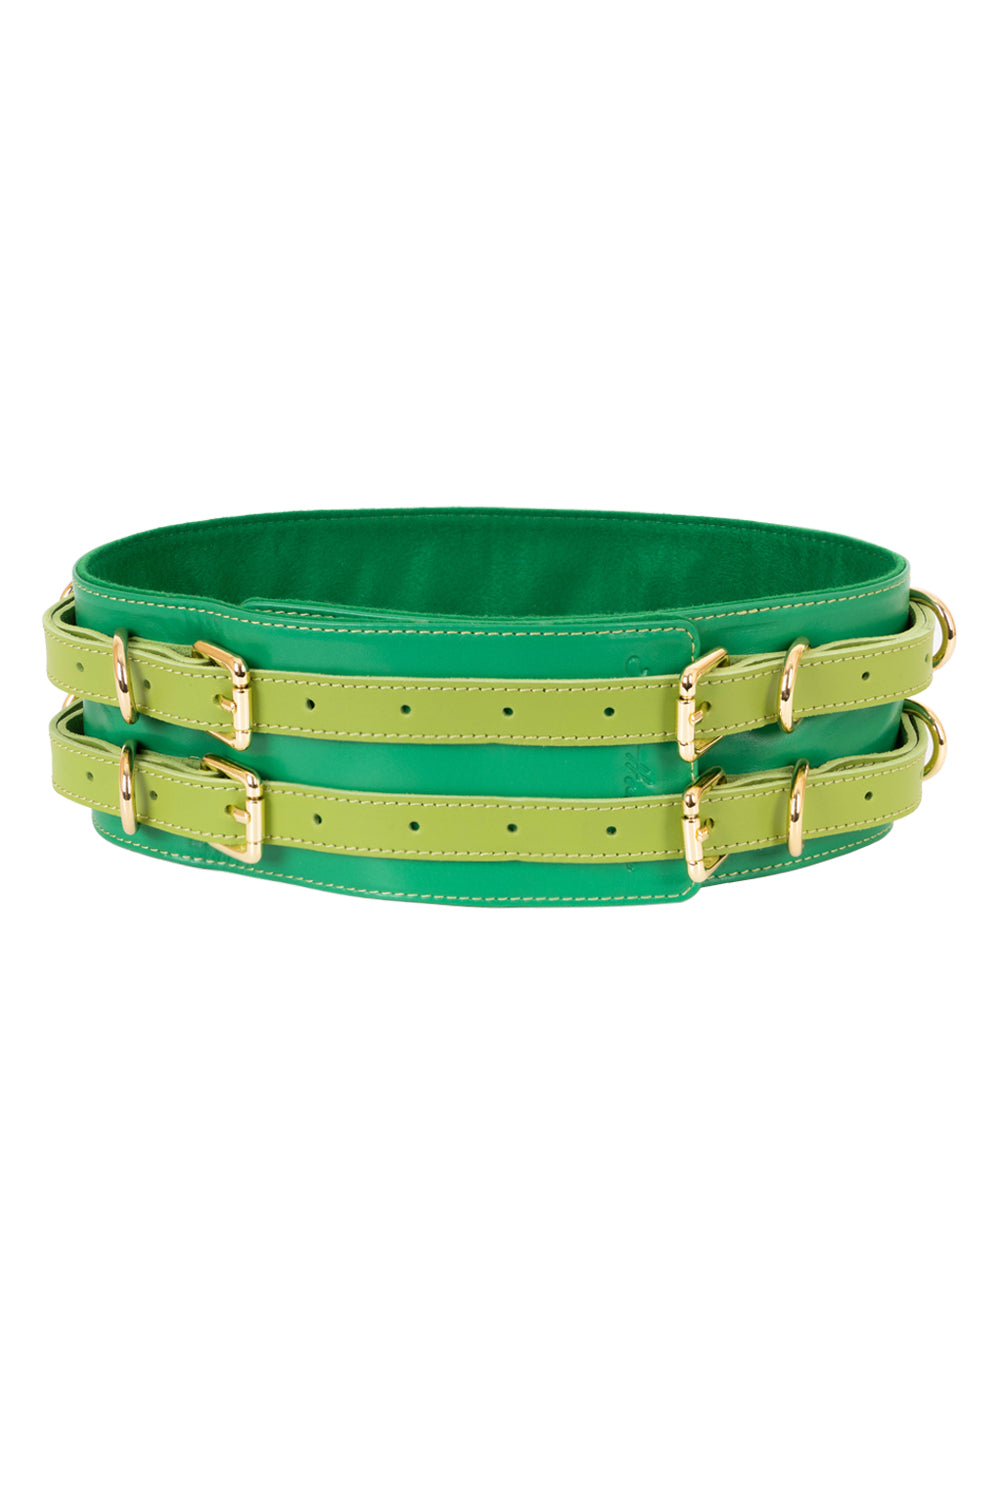 Leather Waist Belt. Green